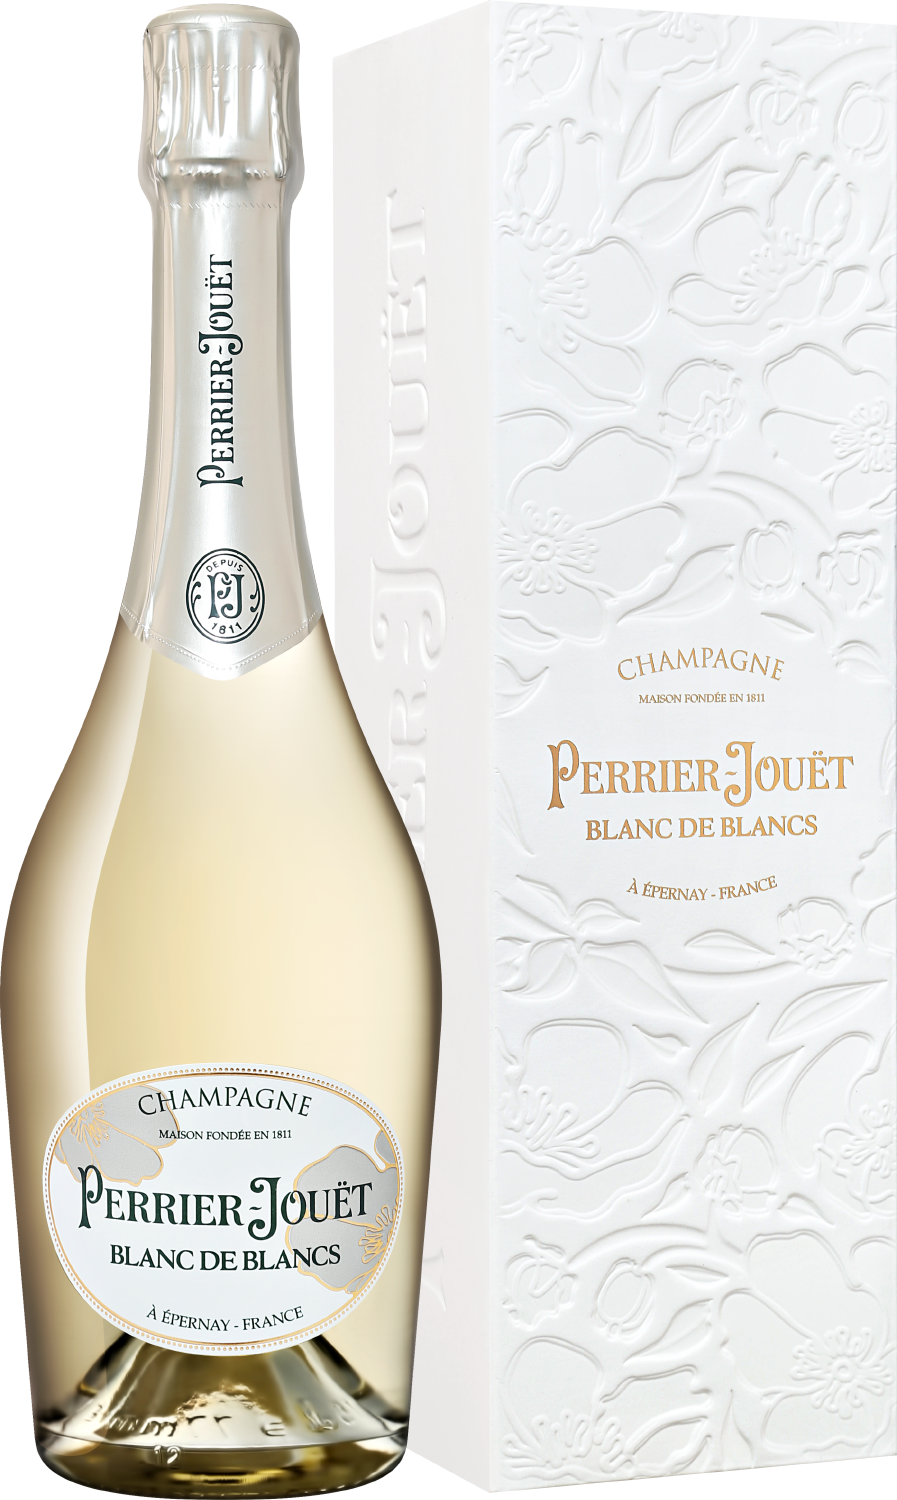 Perrier-Jouet Blanc De Blancs Champagne AOC Brut blanc de blancs brut nature champagne aoс laherte freres